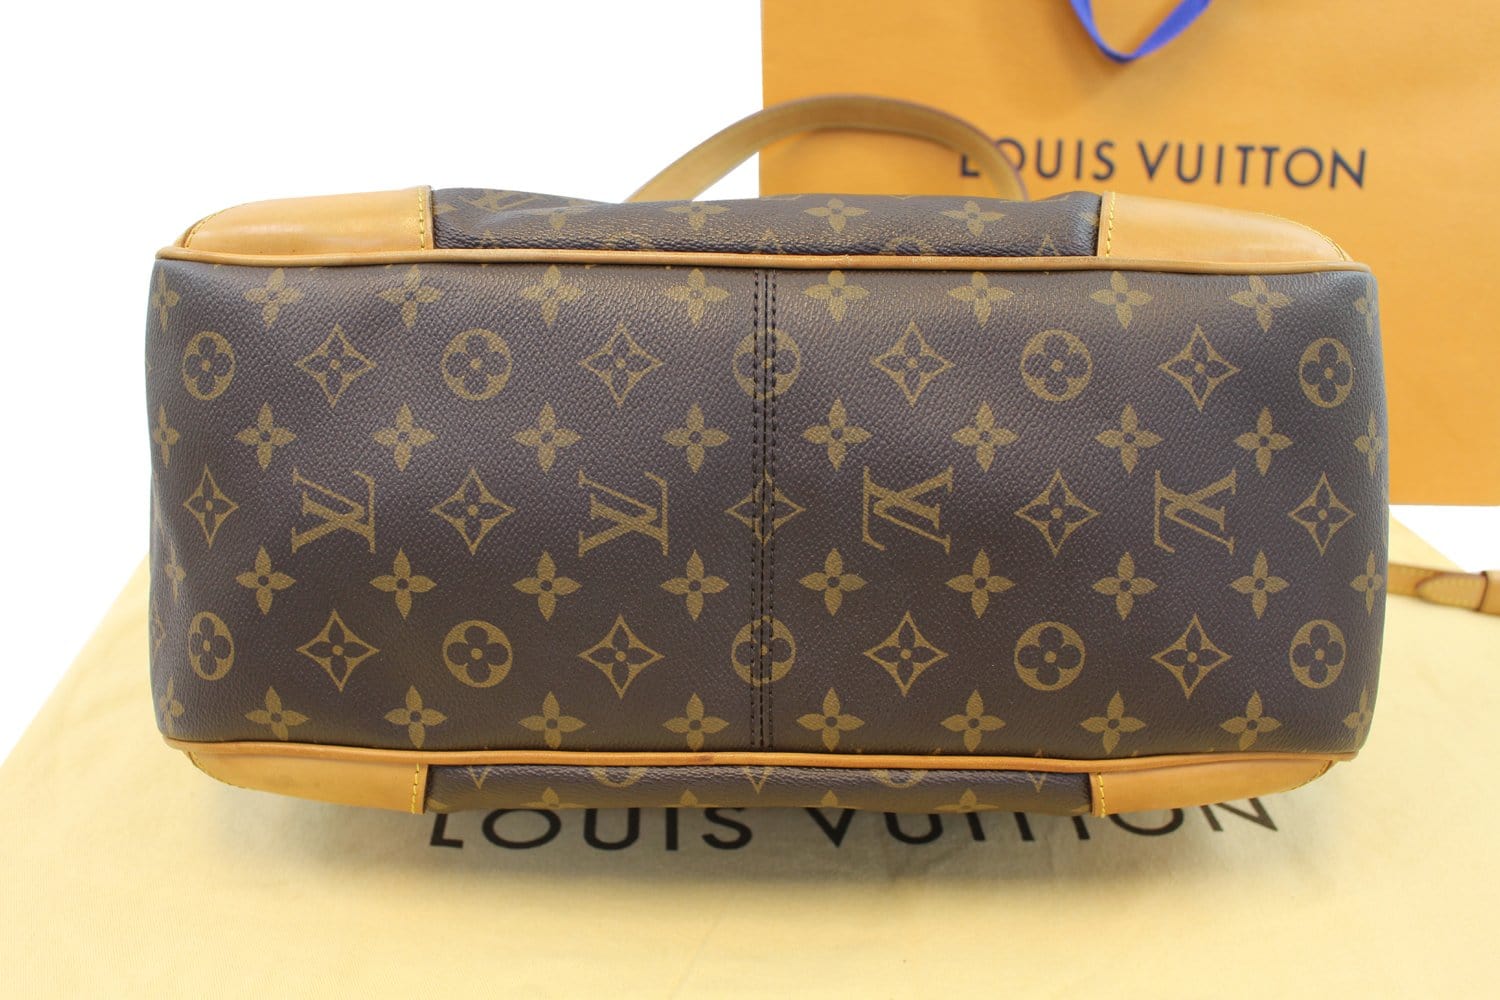 LV Estrela Organizer Bag Purse Organizer for Louis Vuitton 